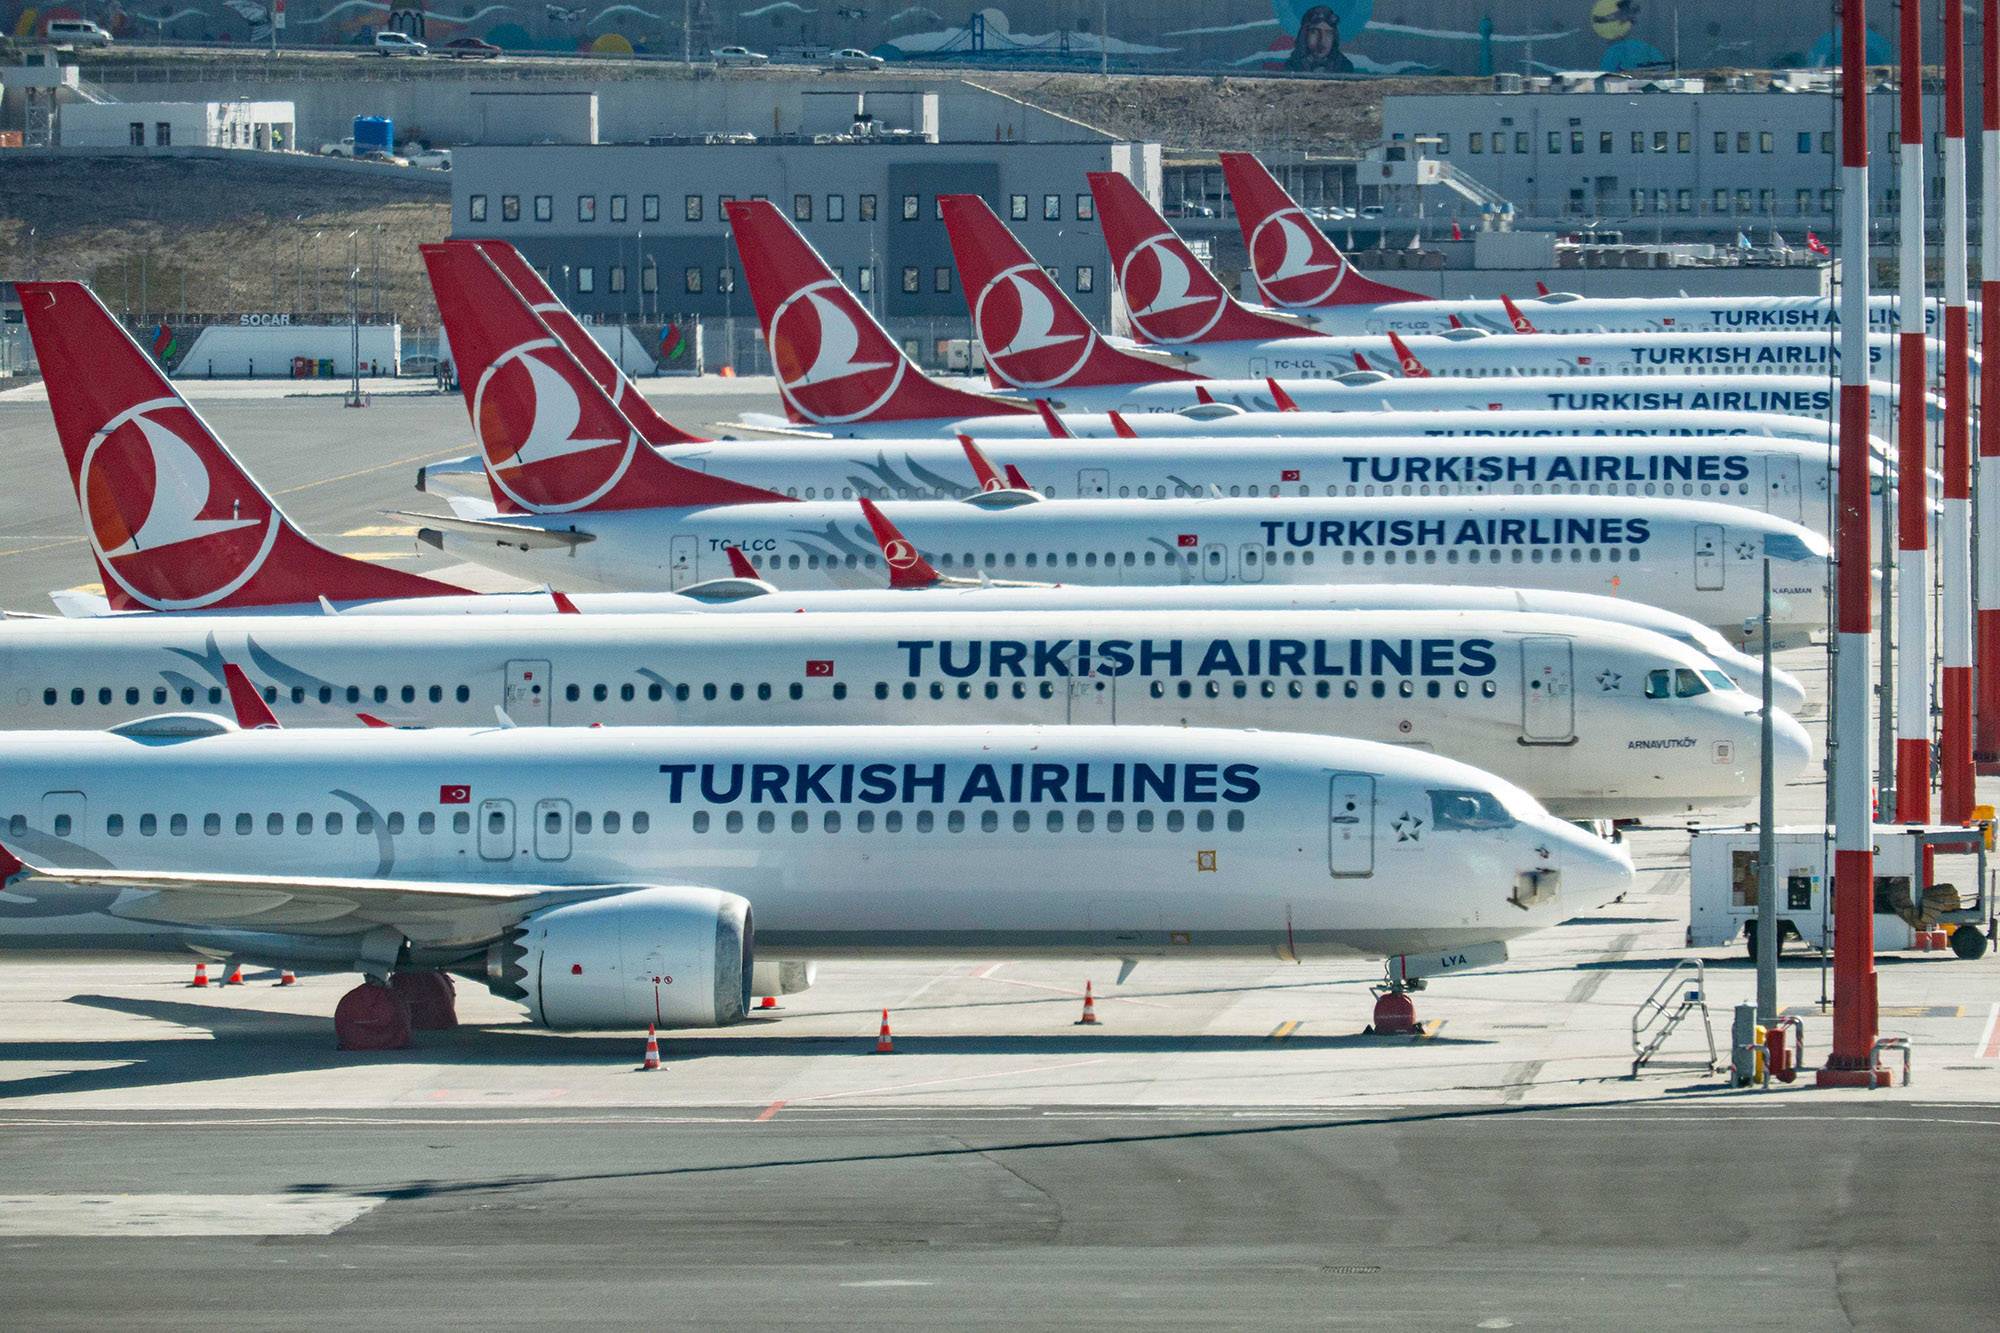 Турецкие авиалинии попали в список крупнейших авиакомпаний мира